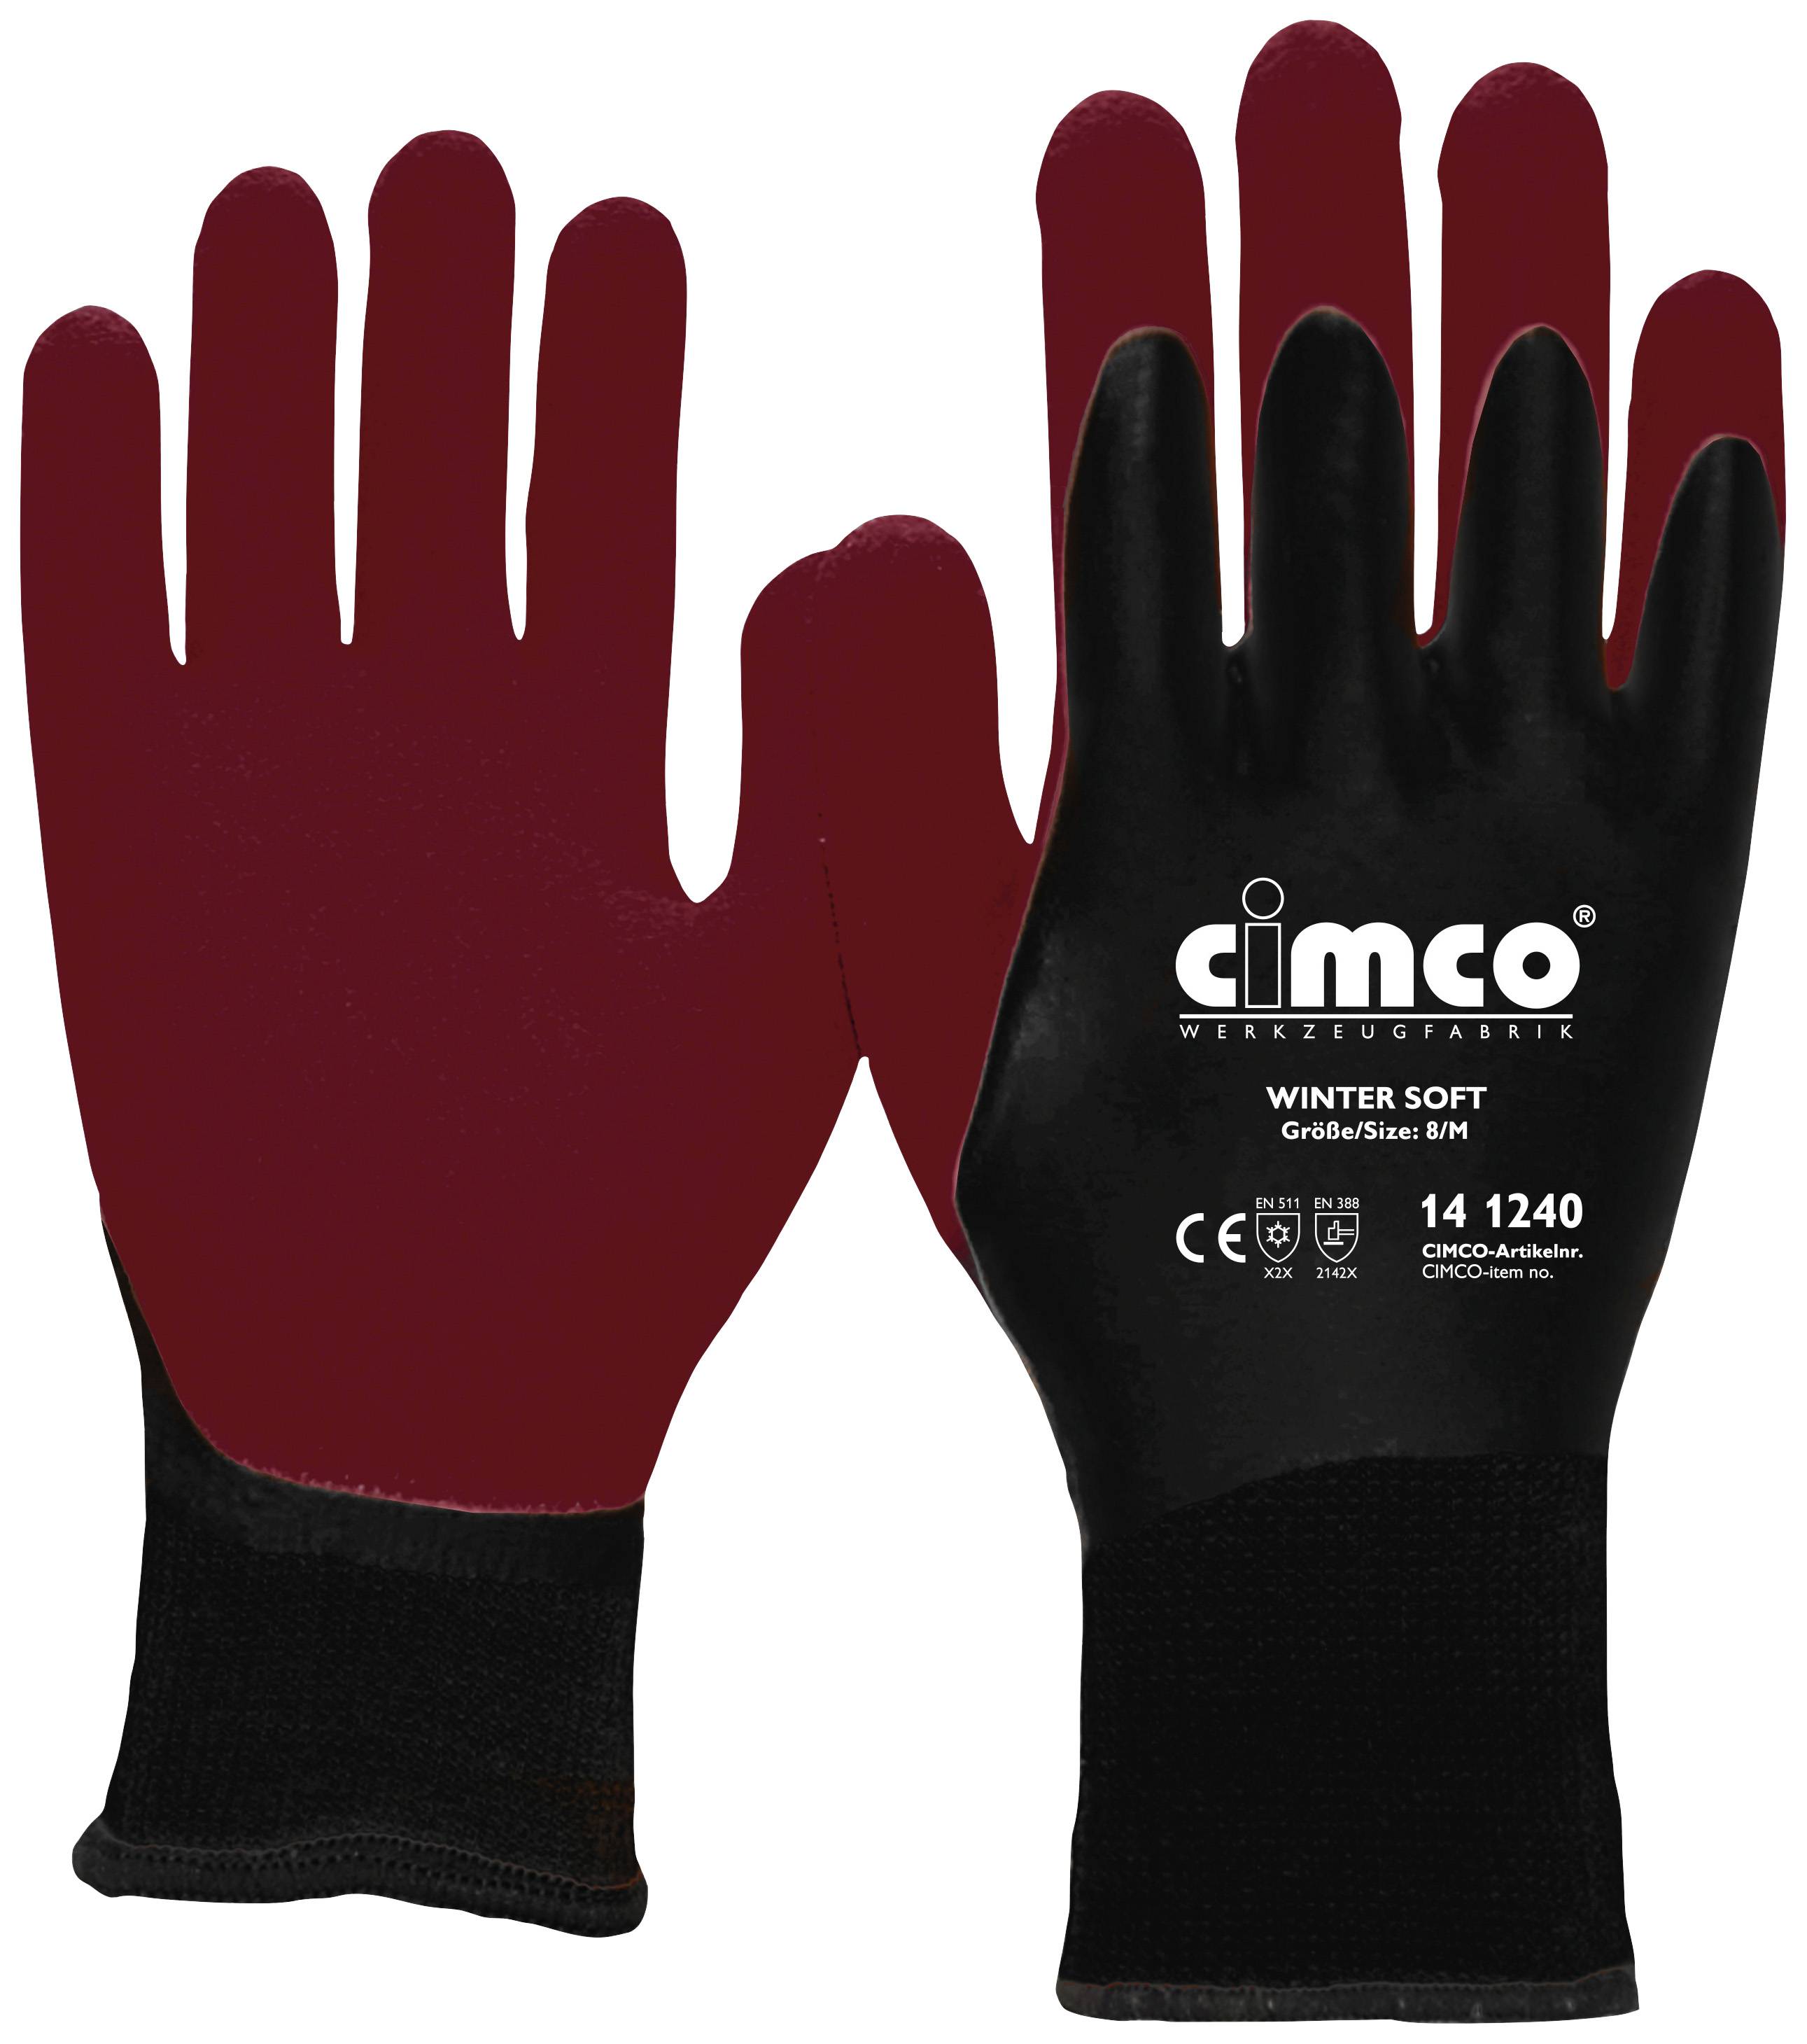 Cimco Winter Soft dunkelrot/schwarz 141240 Vinyl Arbeitshandschuh Größe (Handschuhe): 8, M EN 388 1